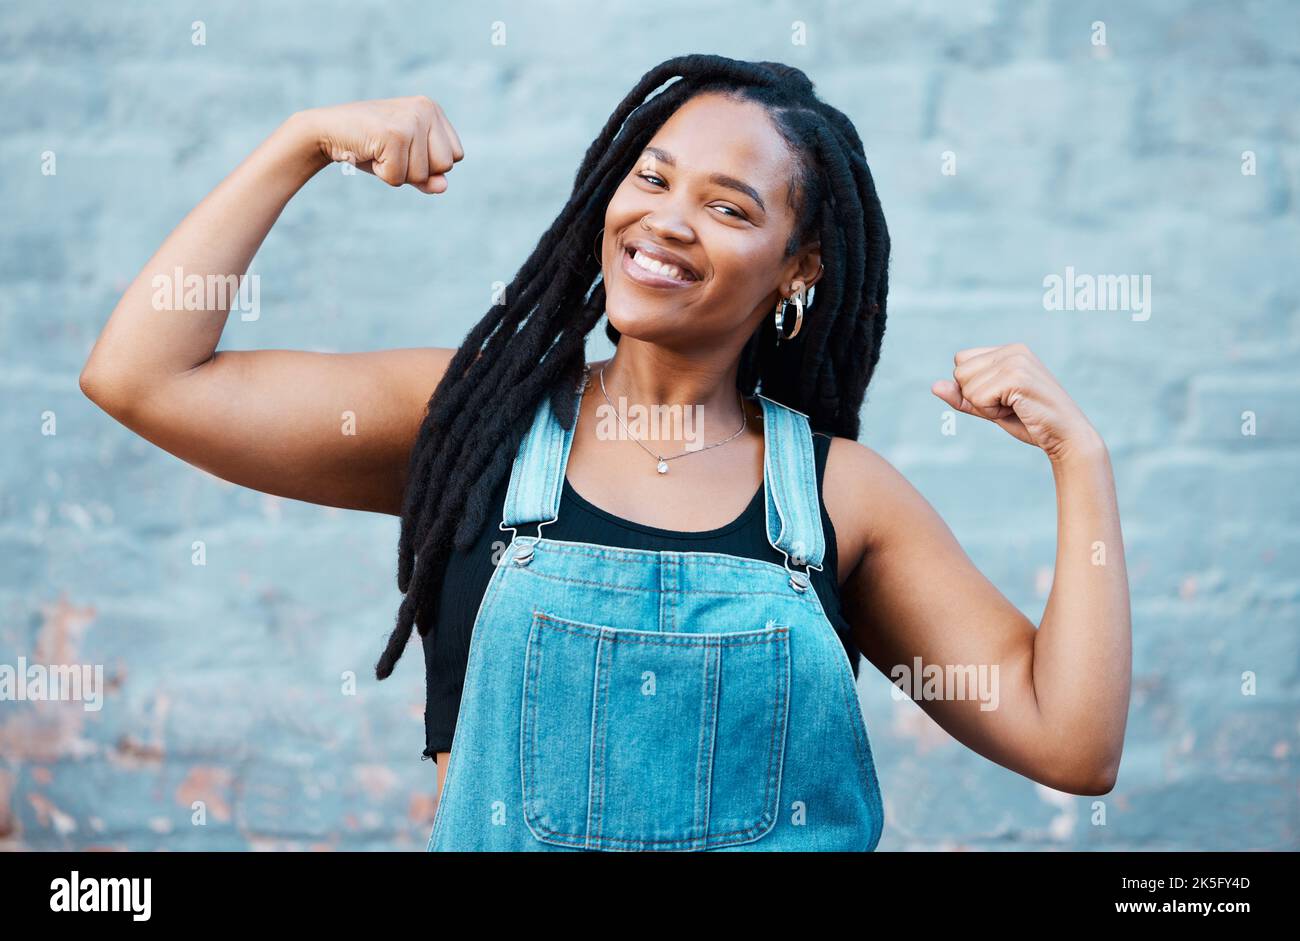 Glückliche schwarze Frau, Portrait Lächeln und Muskelkraft, Kraft und selbstbewusste Pose auf Wandhintergrund. Stolze afrikanische weibliche Biegung Bizeps, Muskeln und Stockfoto